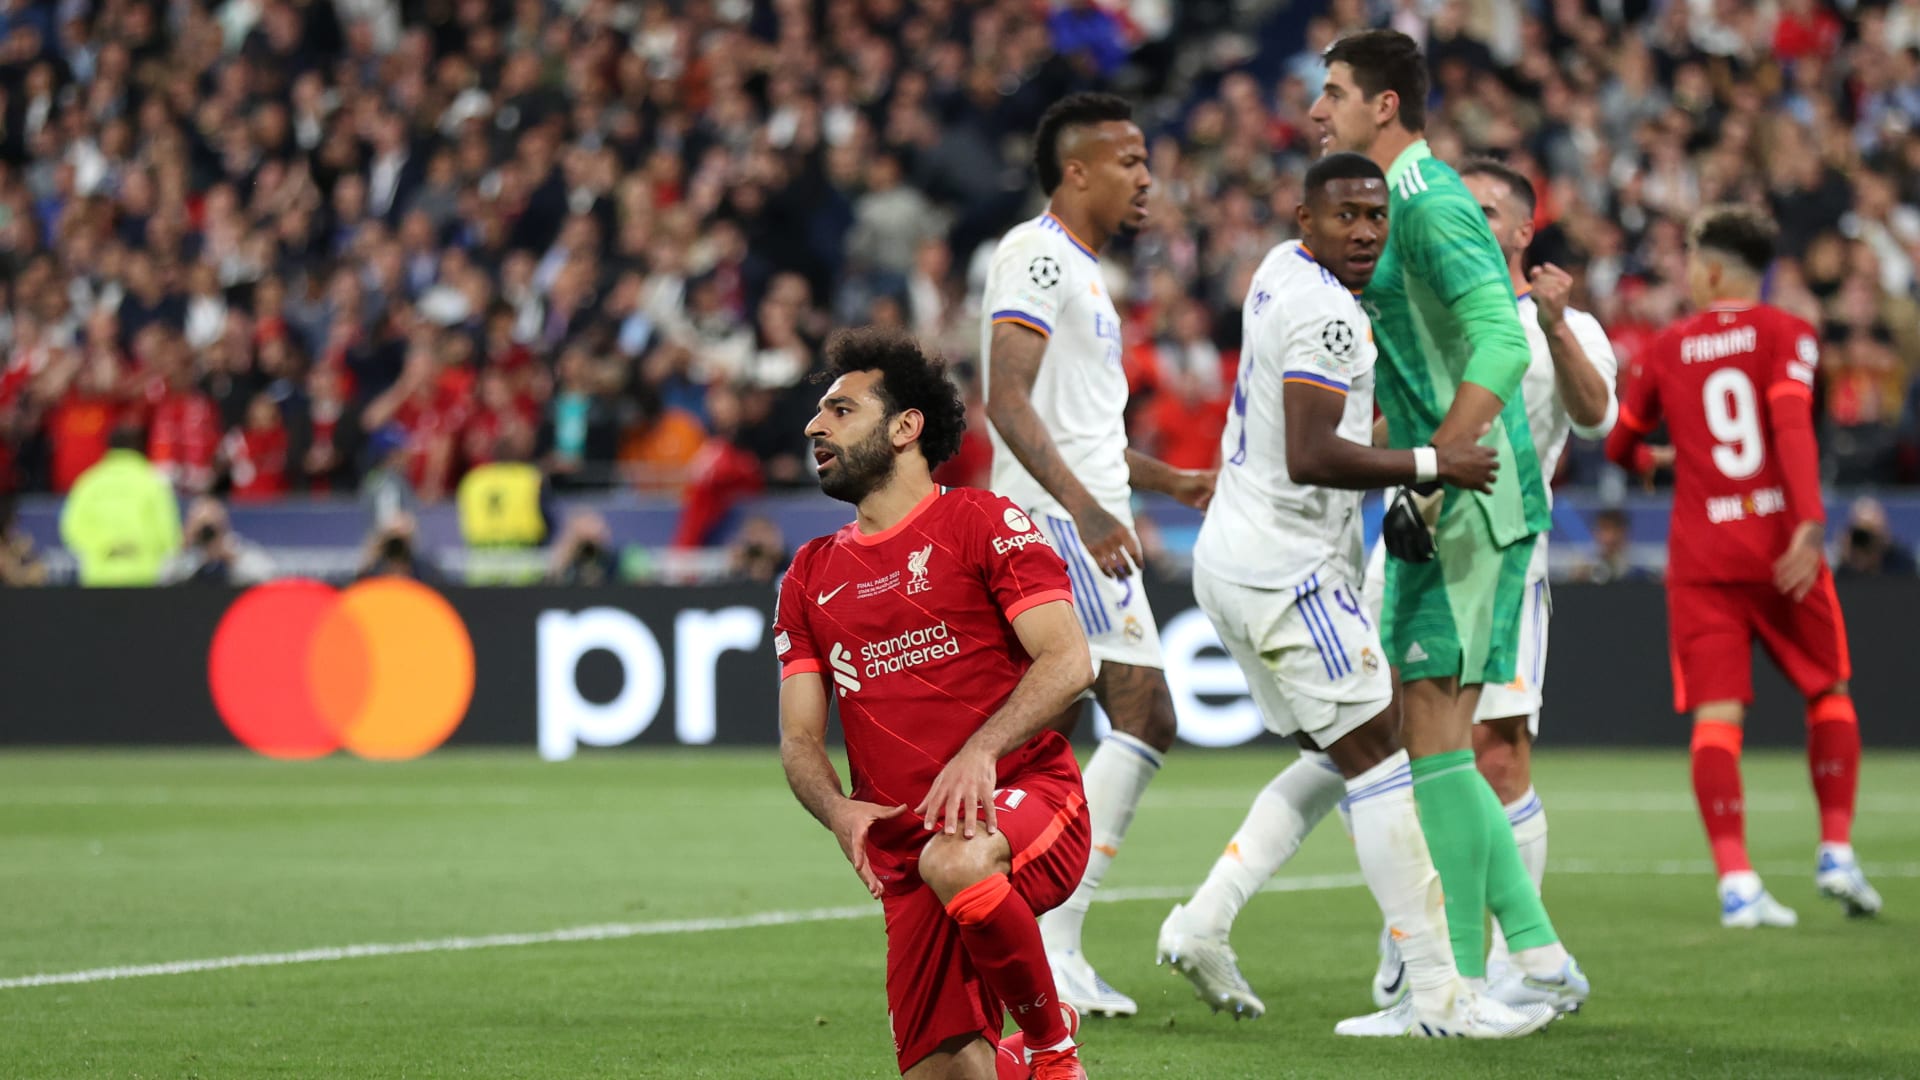 البوكس نيوز – بث مباشر مباراة ريال مدريد وليفربول في دوري أبطال أوروبا